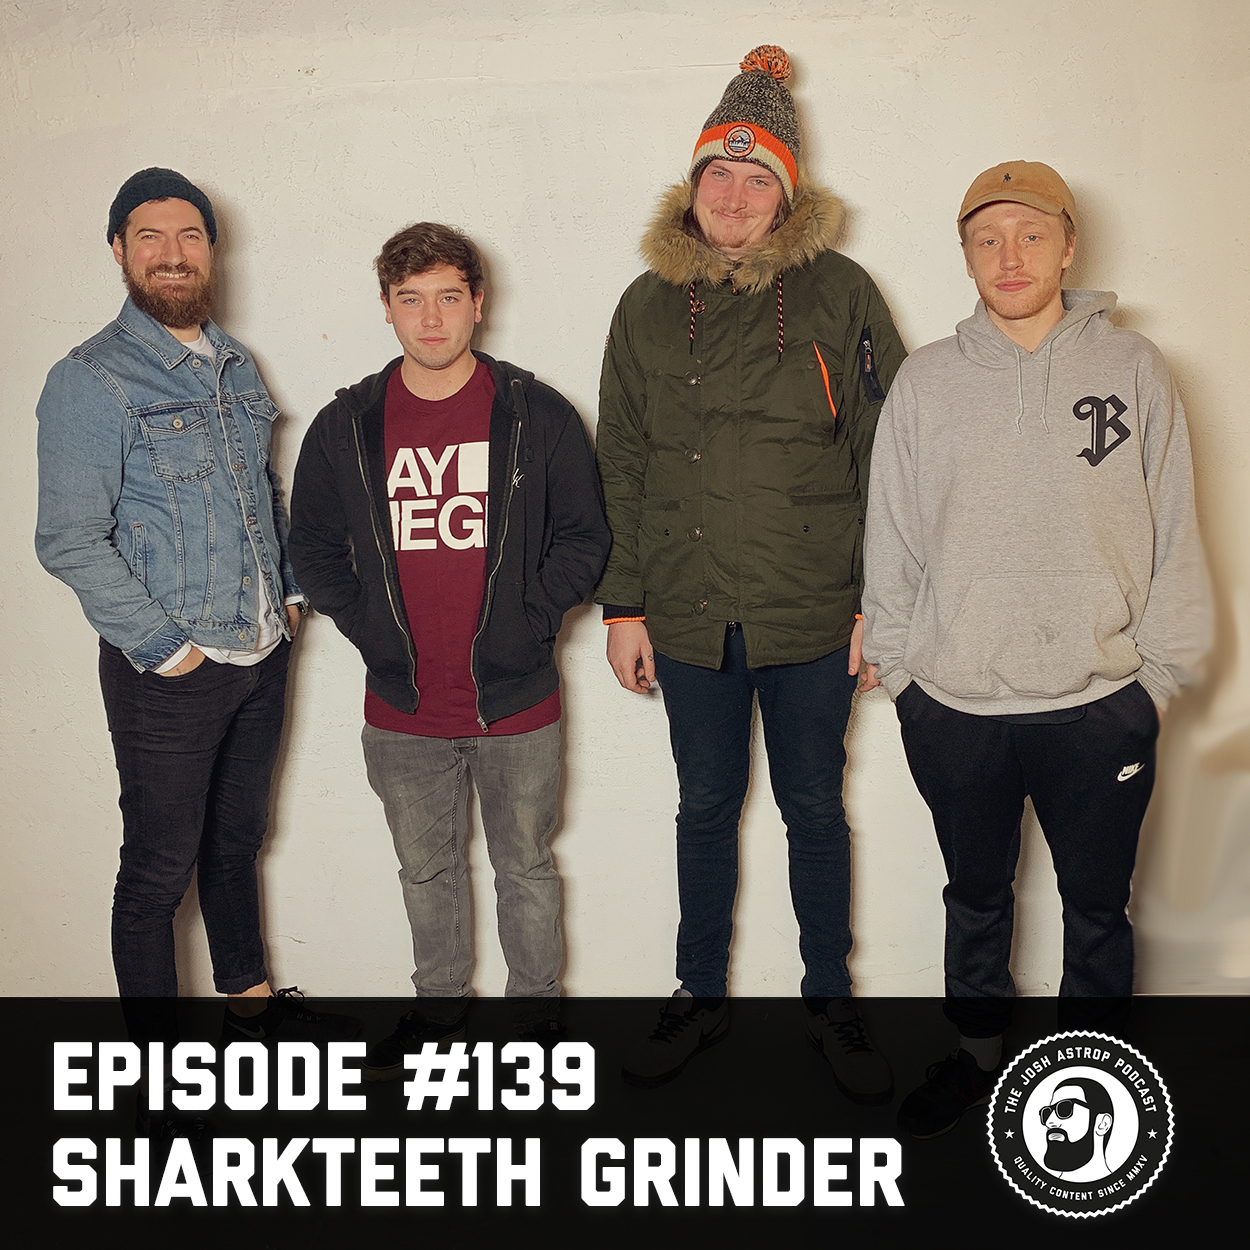 #139 Sharkteeth Grinder - Hard work, stepping up & no compromises.